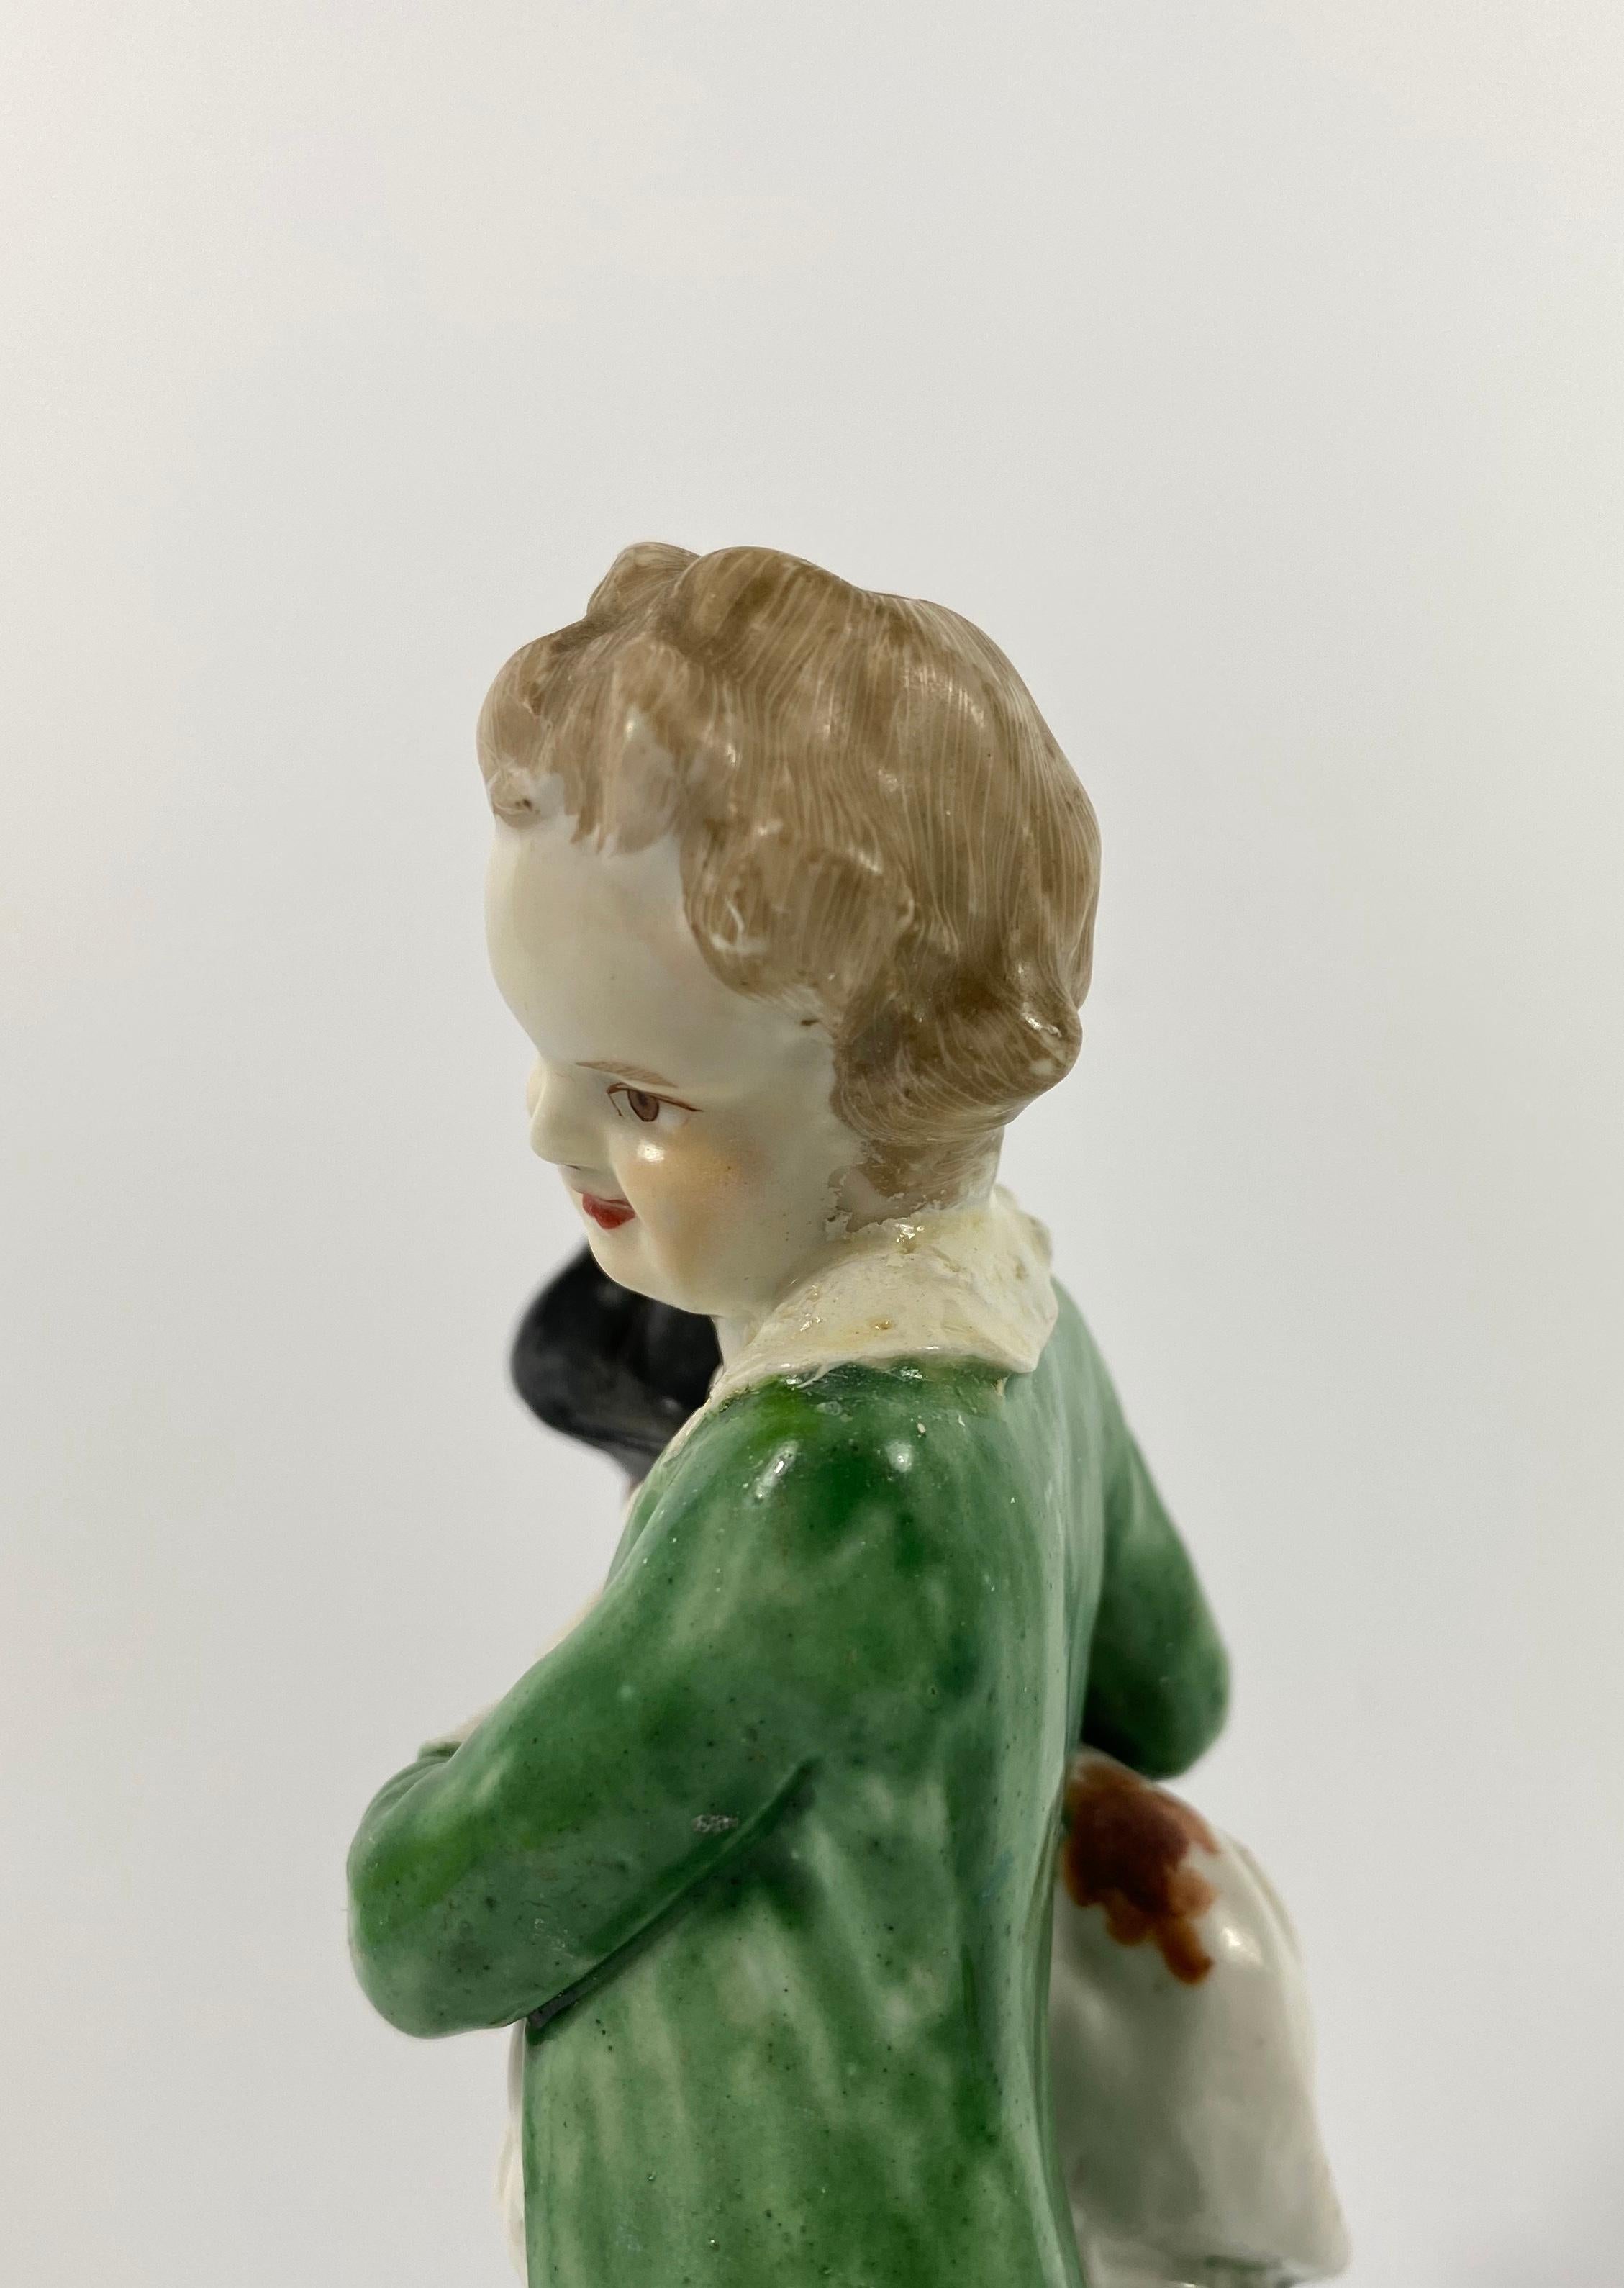 Fired Bristol Porcelain Figure of a Boy, circa 1775